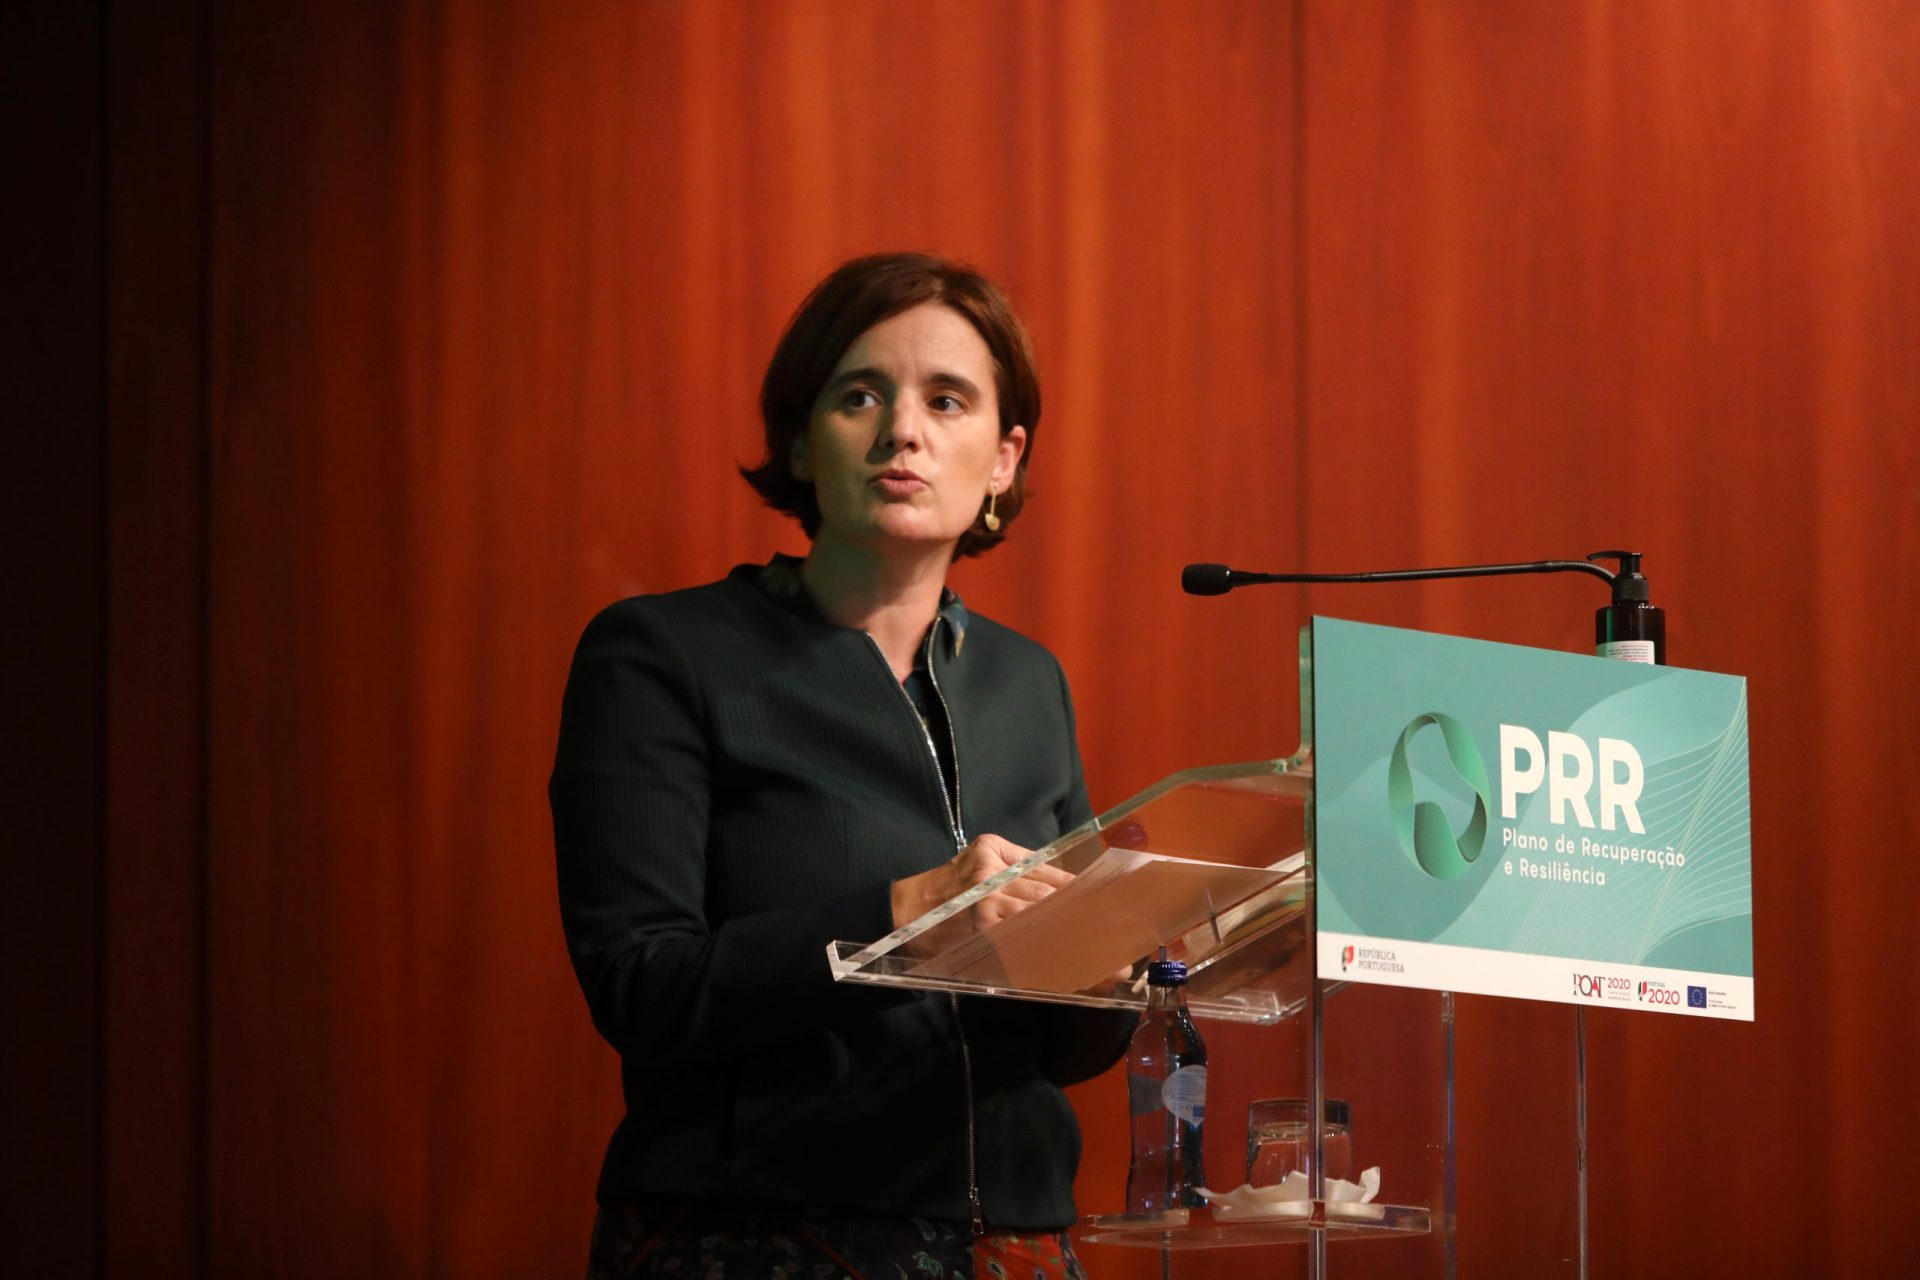 Mariana Vieira da Silva e Bruxelas não dão conta do PRR